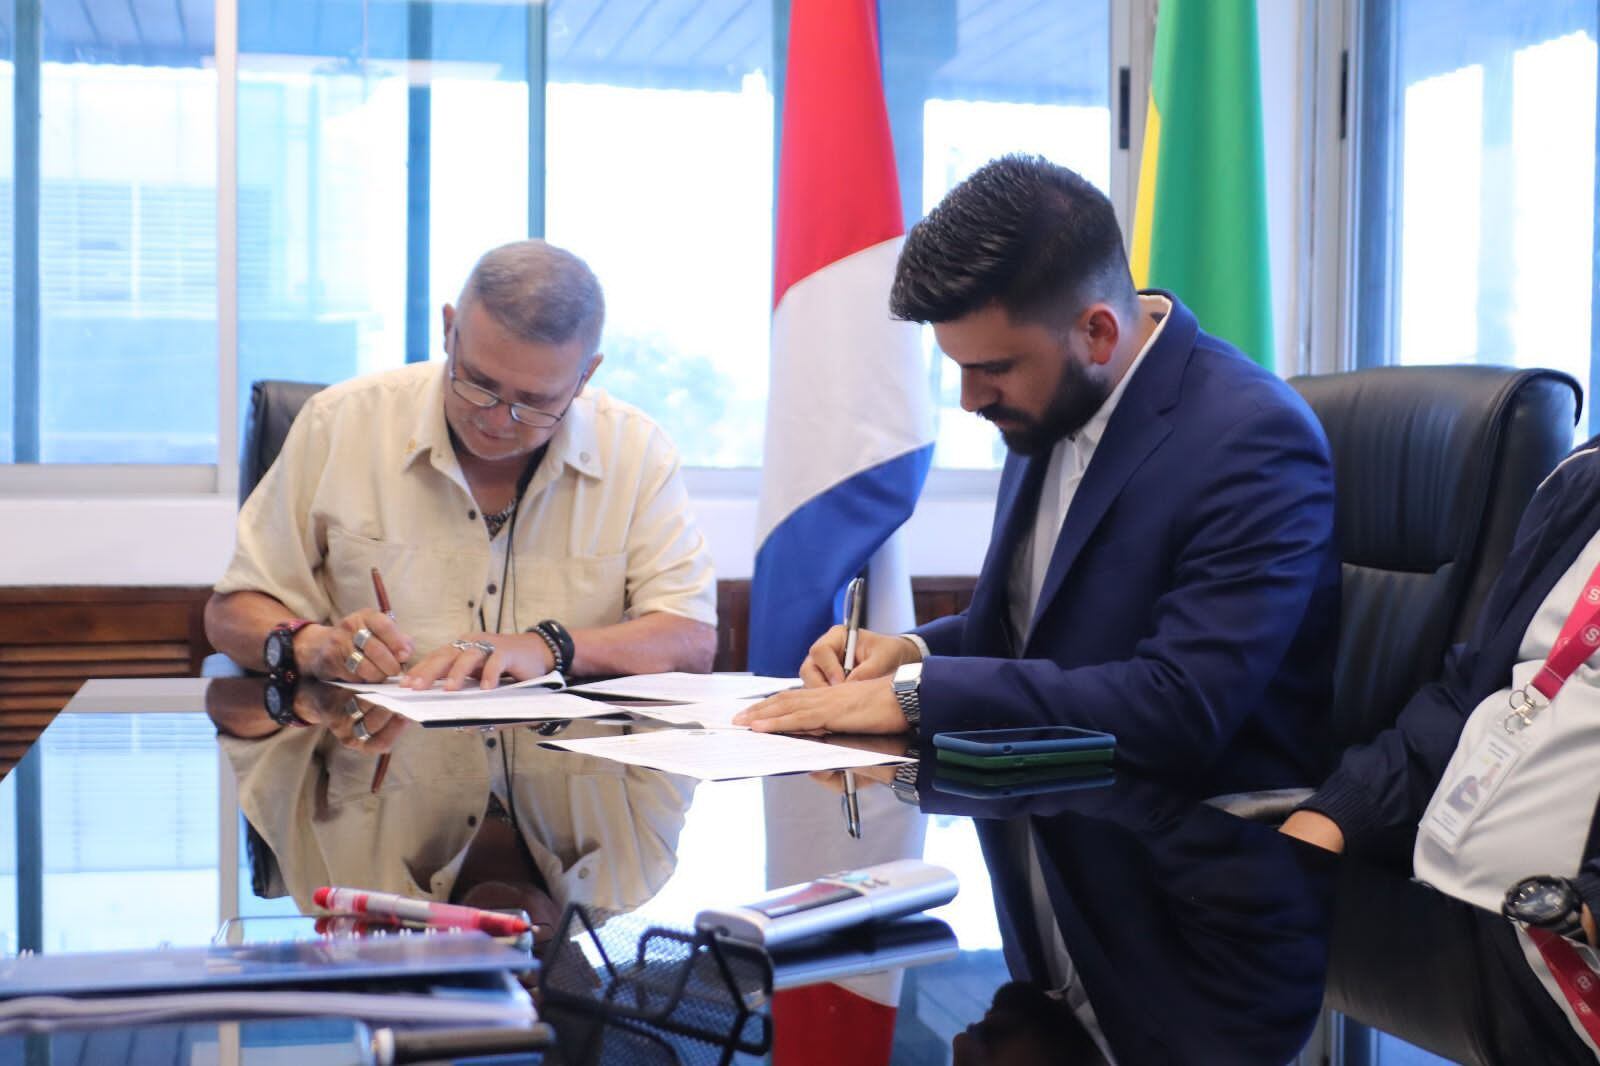 El alcalde de Tibás David Meléndez (izquierda) y el presidente ejecutivo de Incofer,Alvaro Bermúdez (derecha) firmaron un convenio para la construcción de tres pasos a nivel en el cantón. (Cortesía)